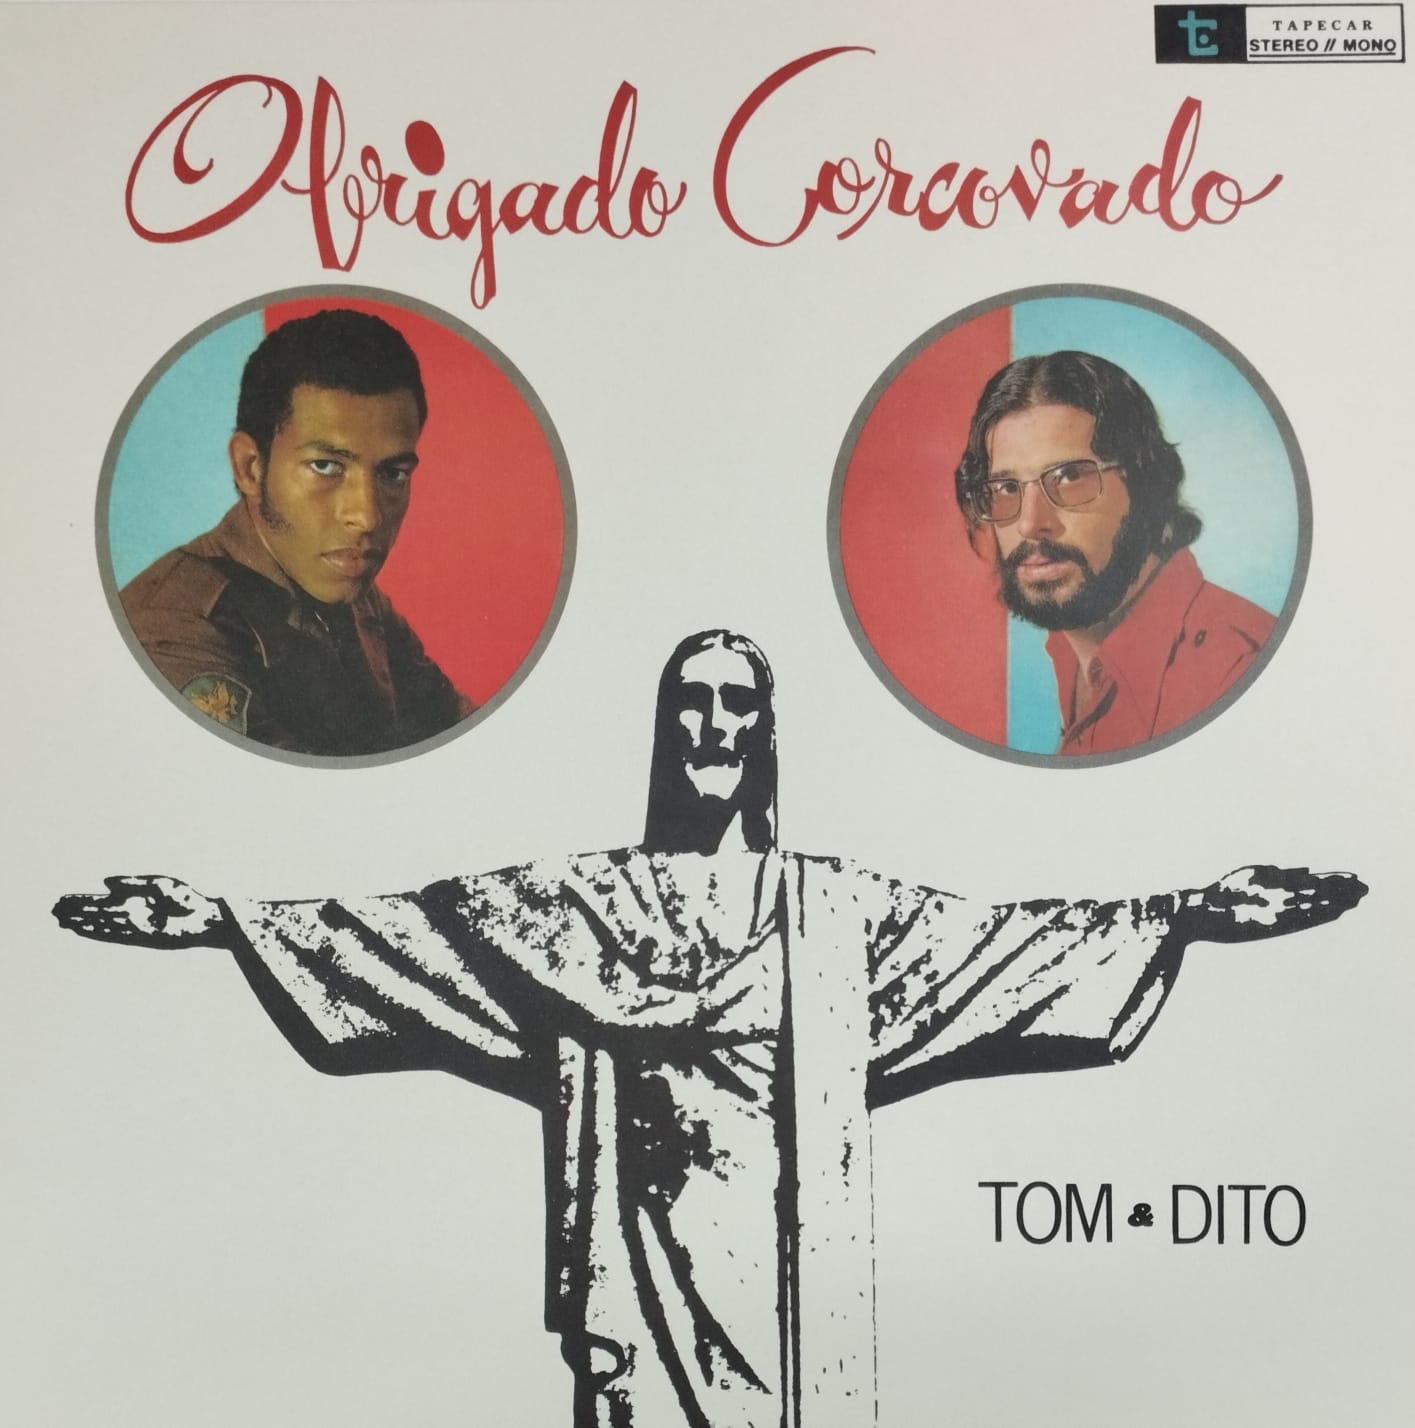 Tom & Dito  - Obrigado Corcovado (Álbum, Reedição)